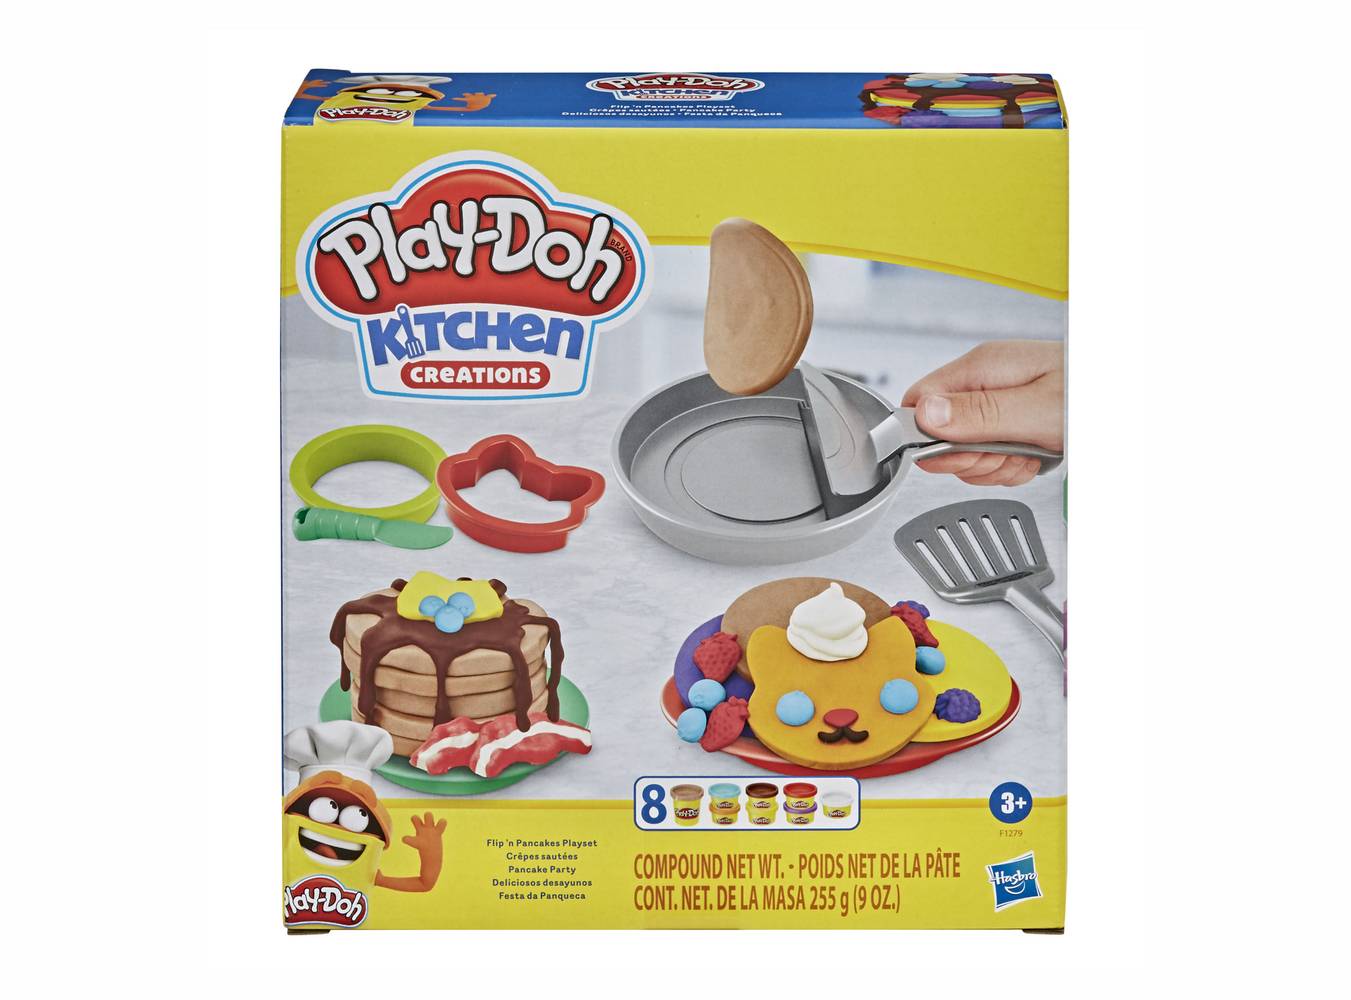 Play-doh masilla kitchen creations desayunos (1 set)